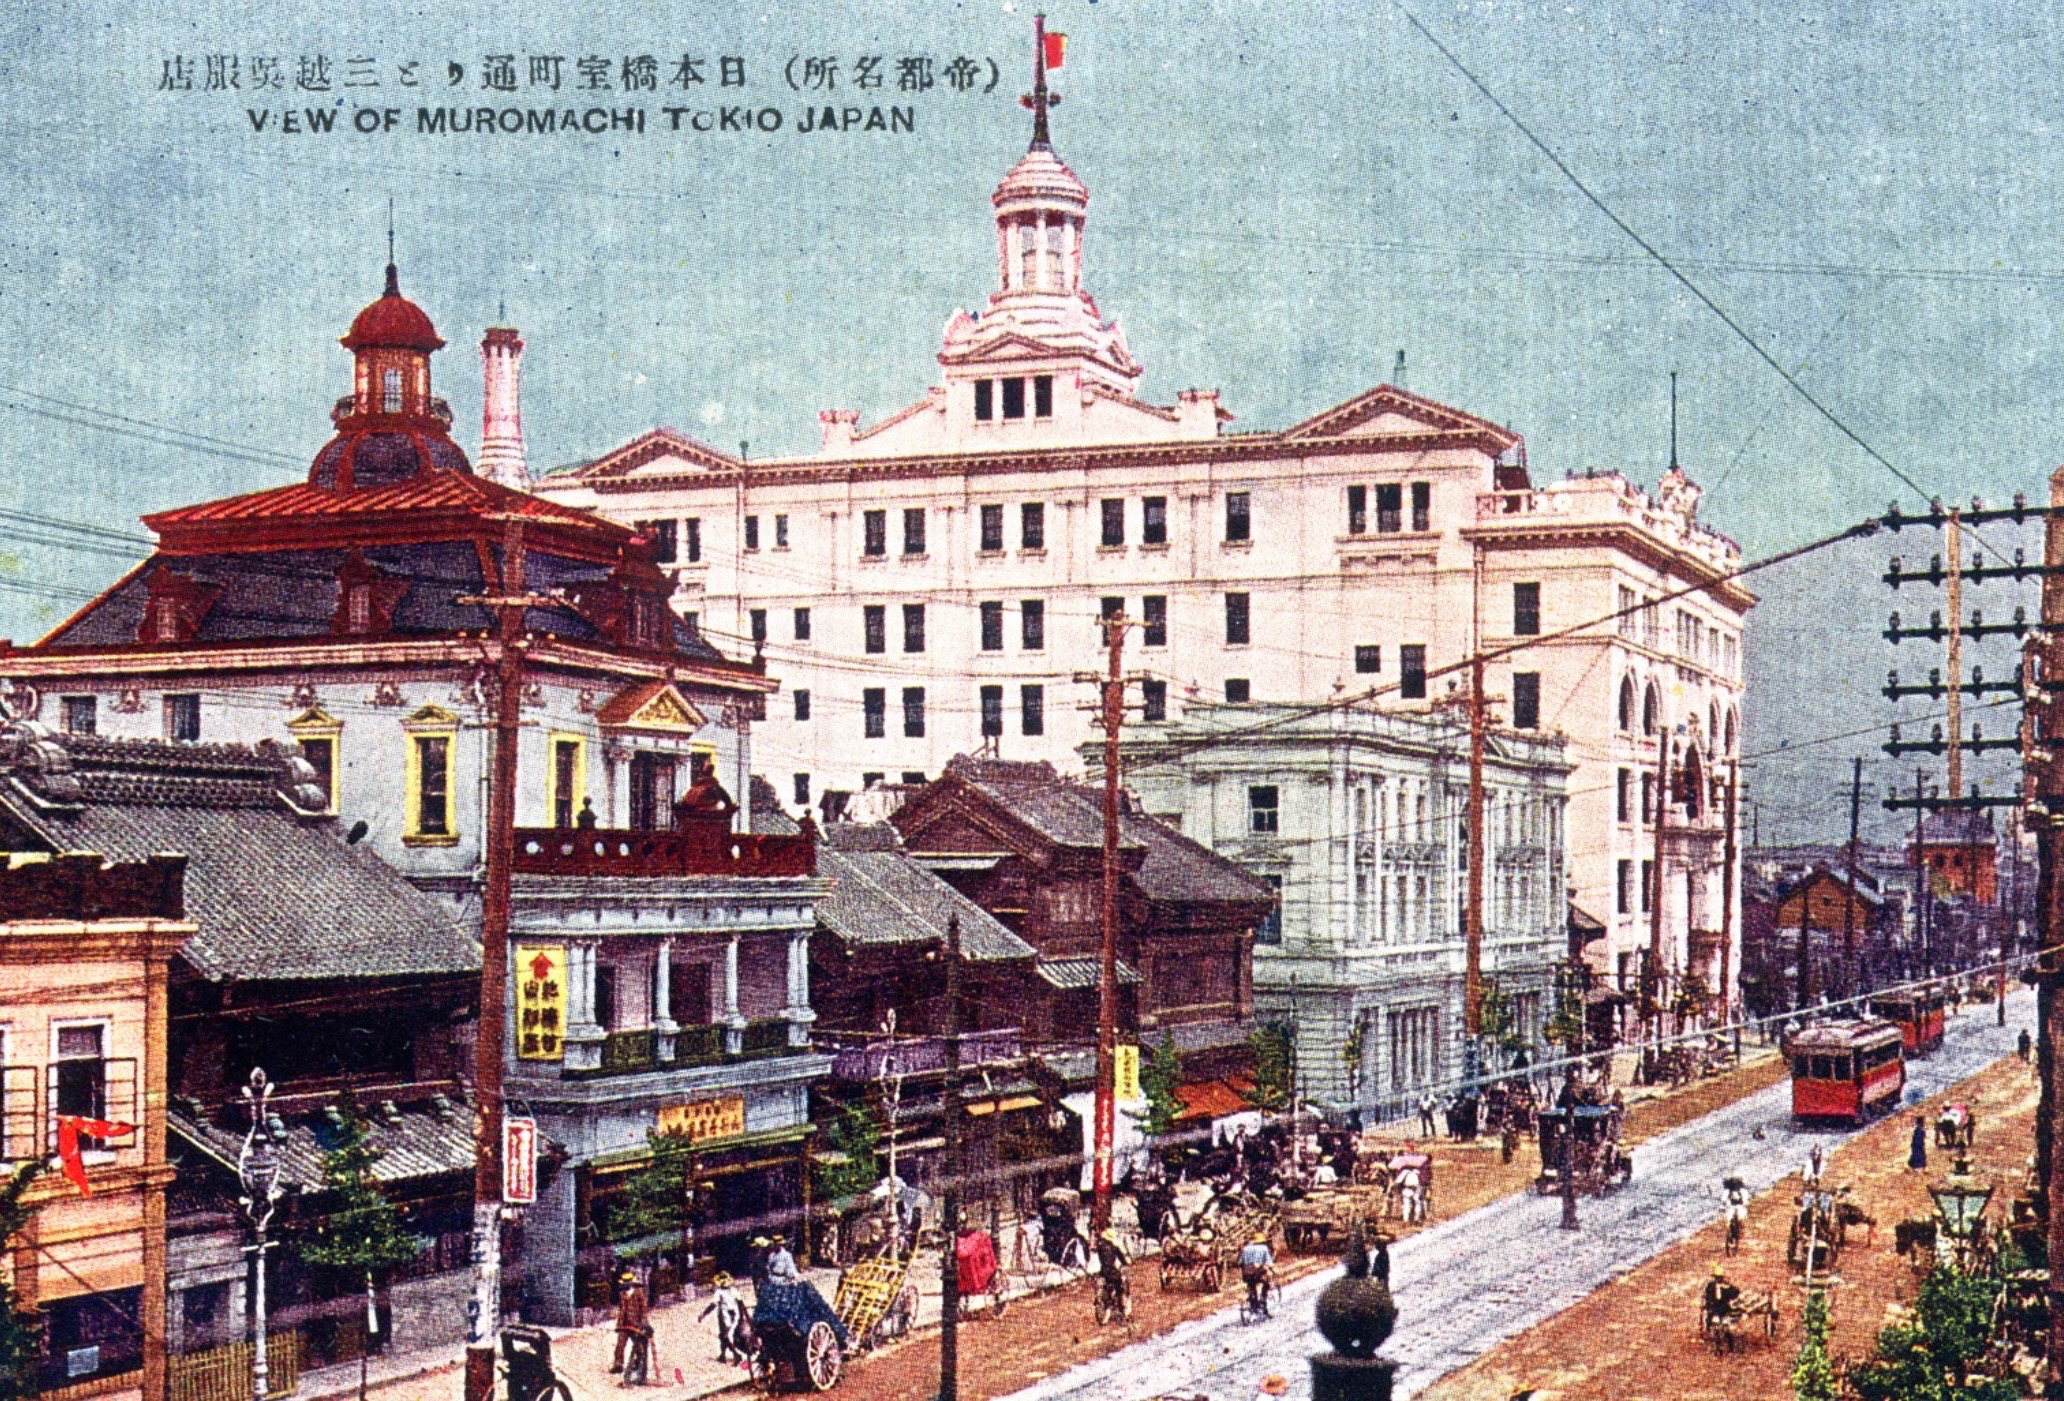 04_Mistukoshi with Murai Bank in the foreground (ca. 1914)